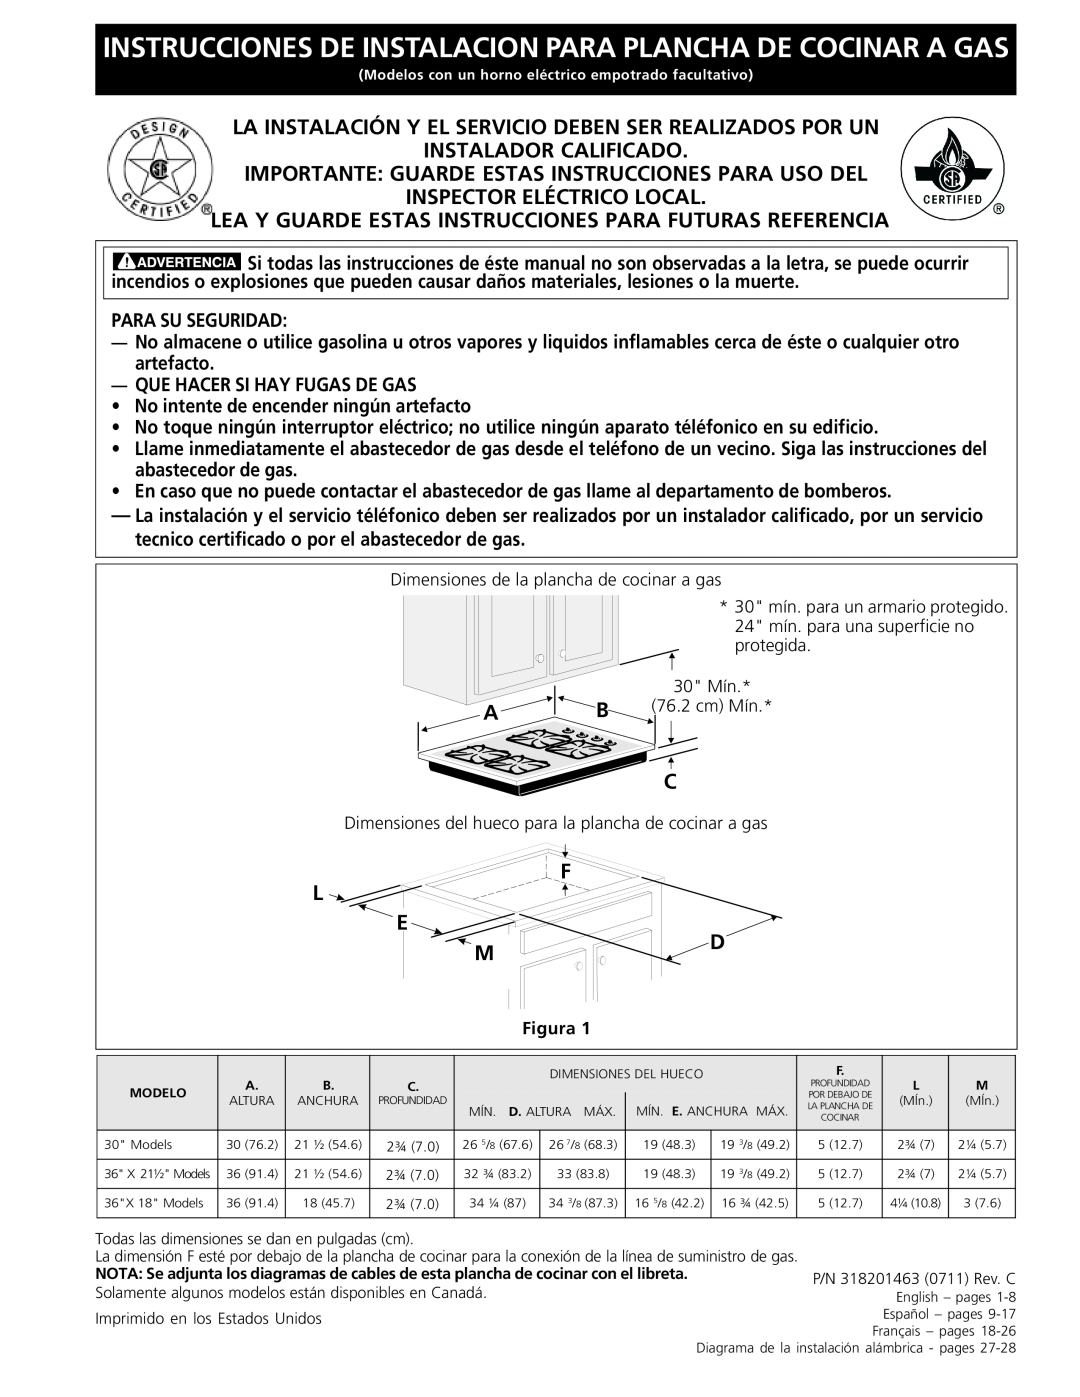 Frigidaire 318201463 (0711), FGC36S5EC Instrucciones De Instalacion Para Plancha De Cocinar A Gas, Instalador Calificado 